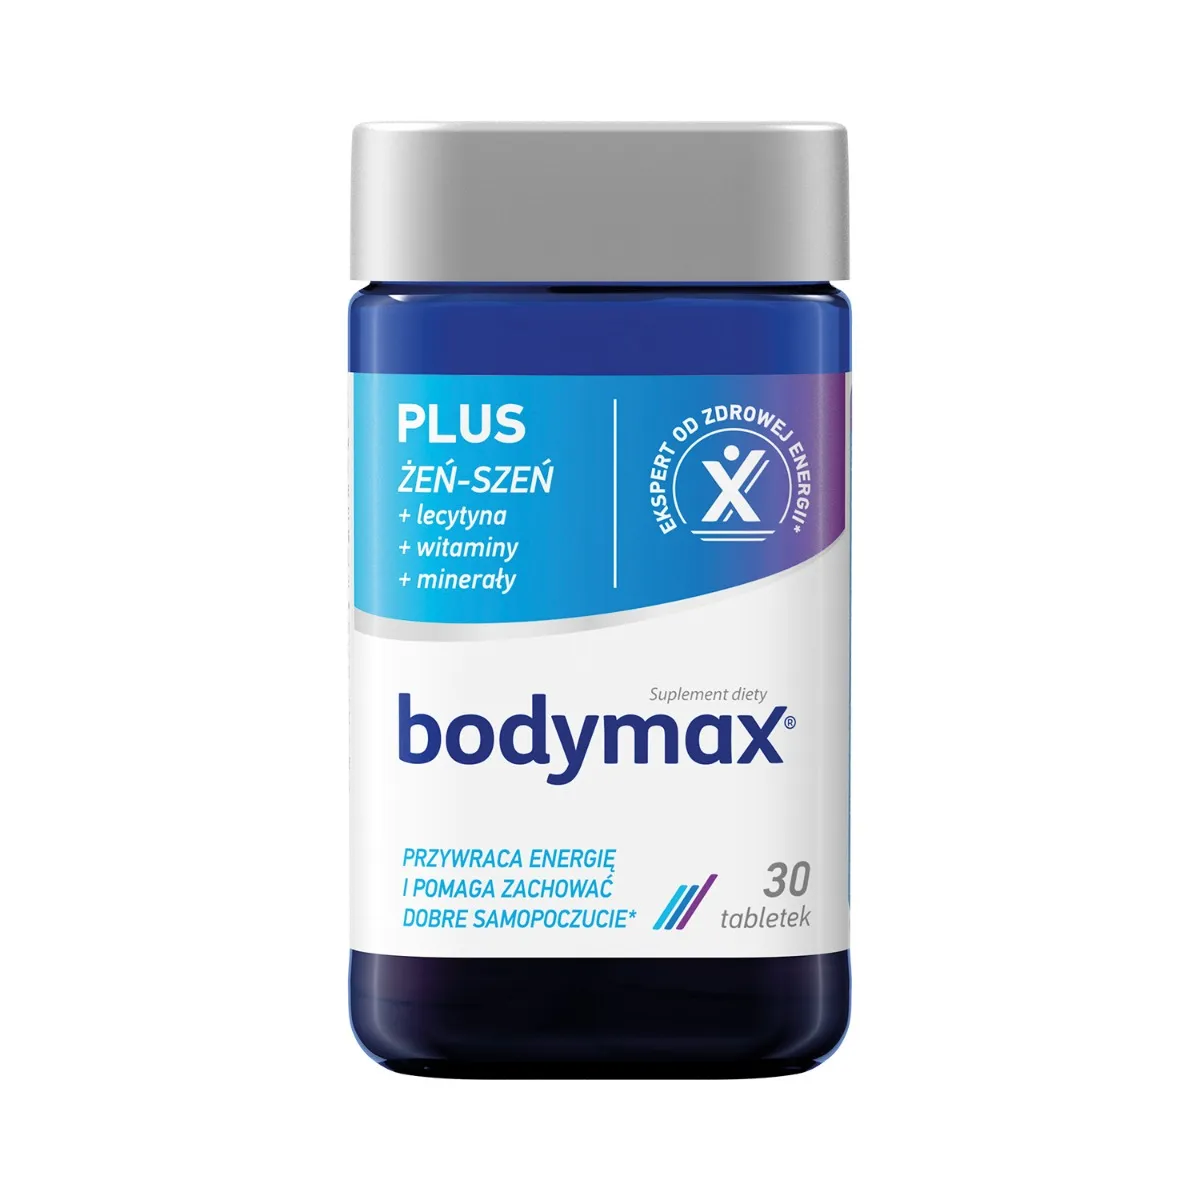 Bodymax Plus suplement diety, 30 tabletek